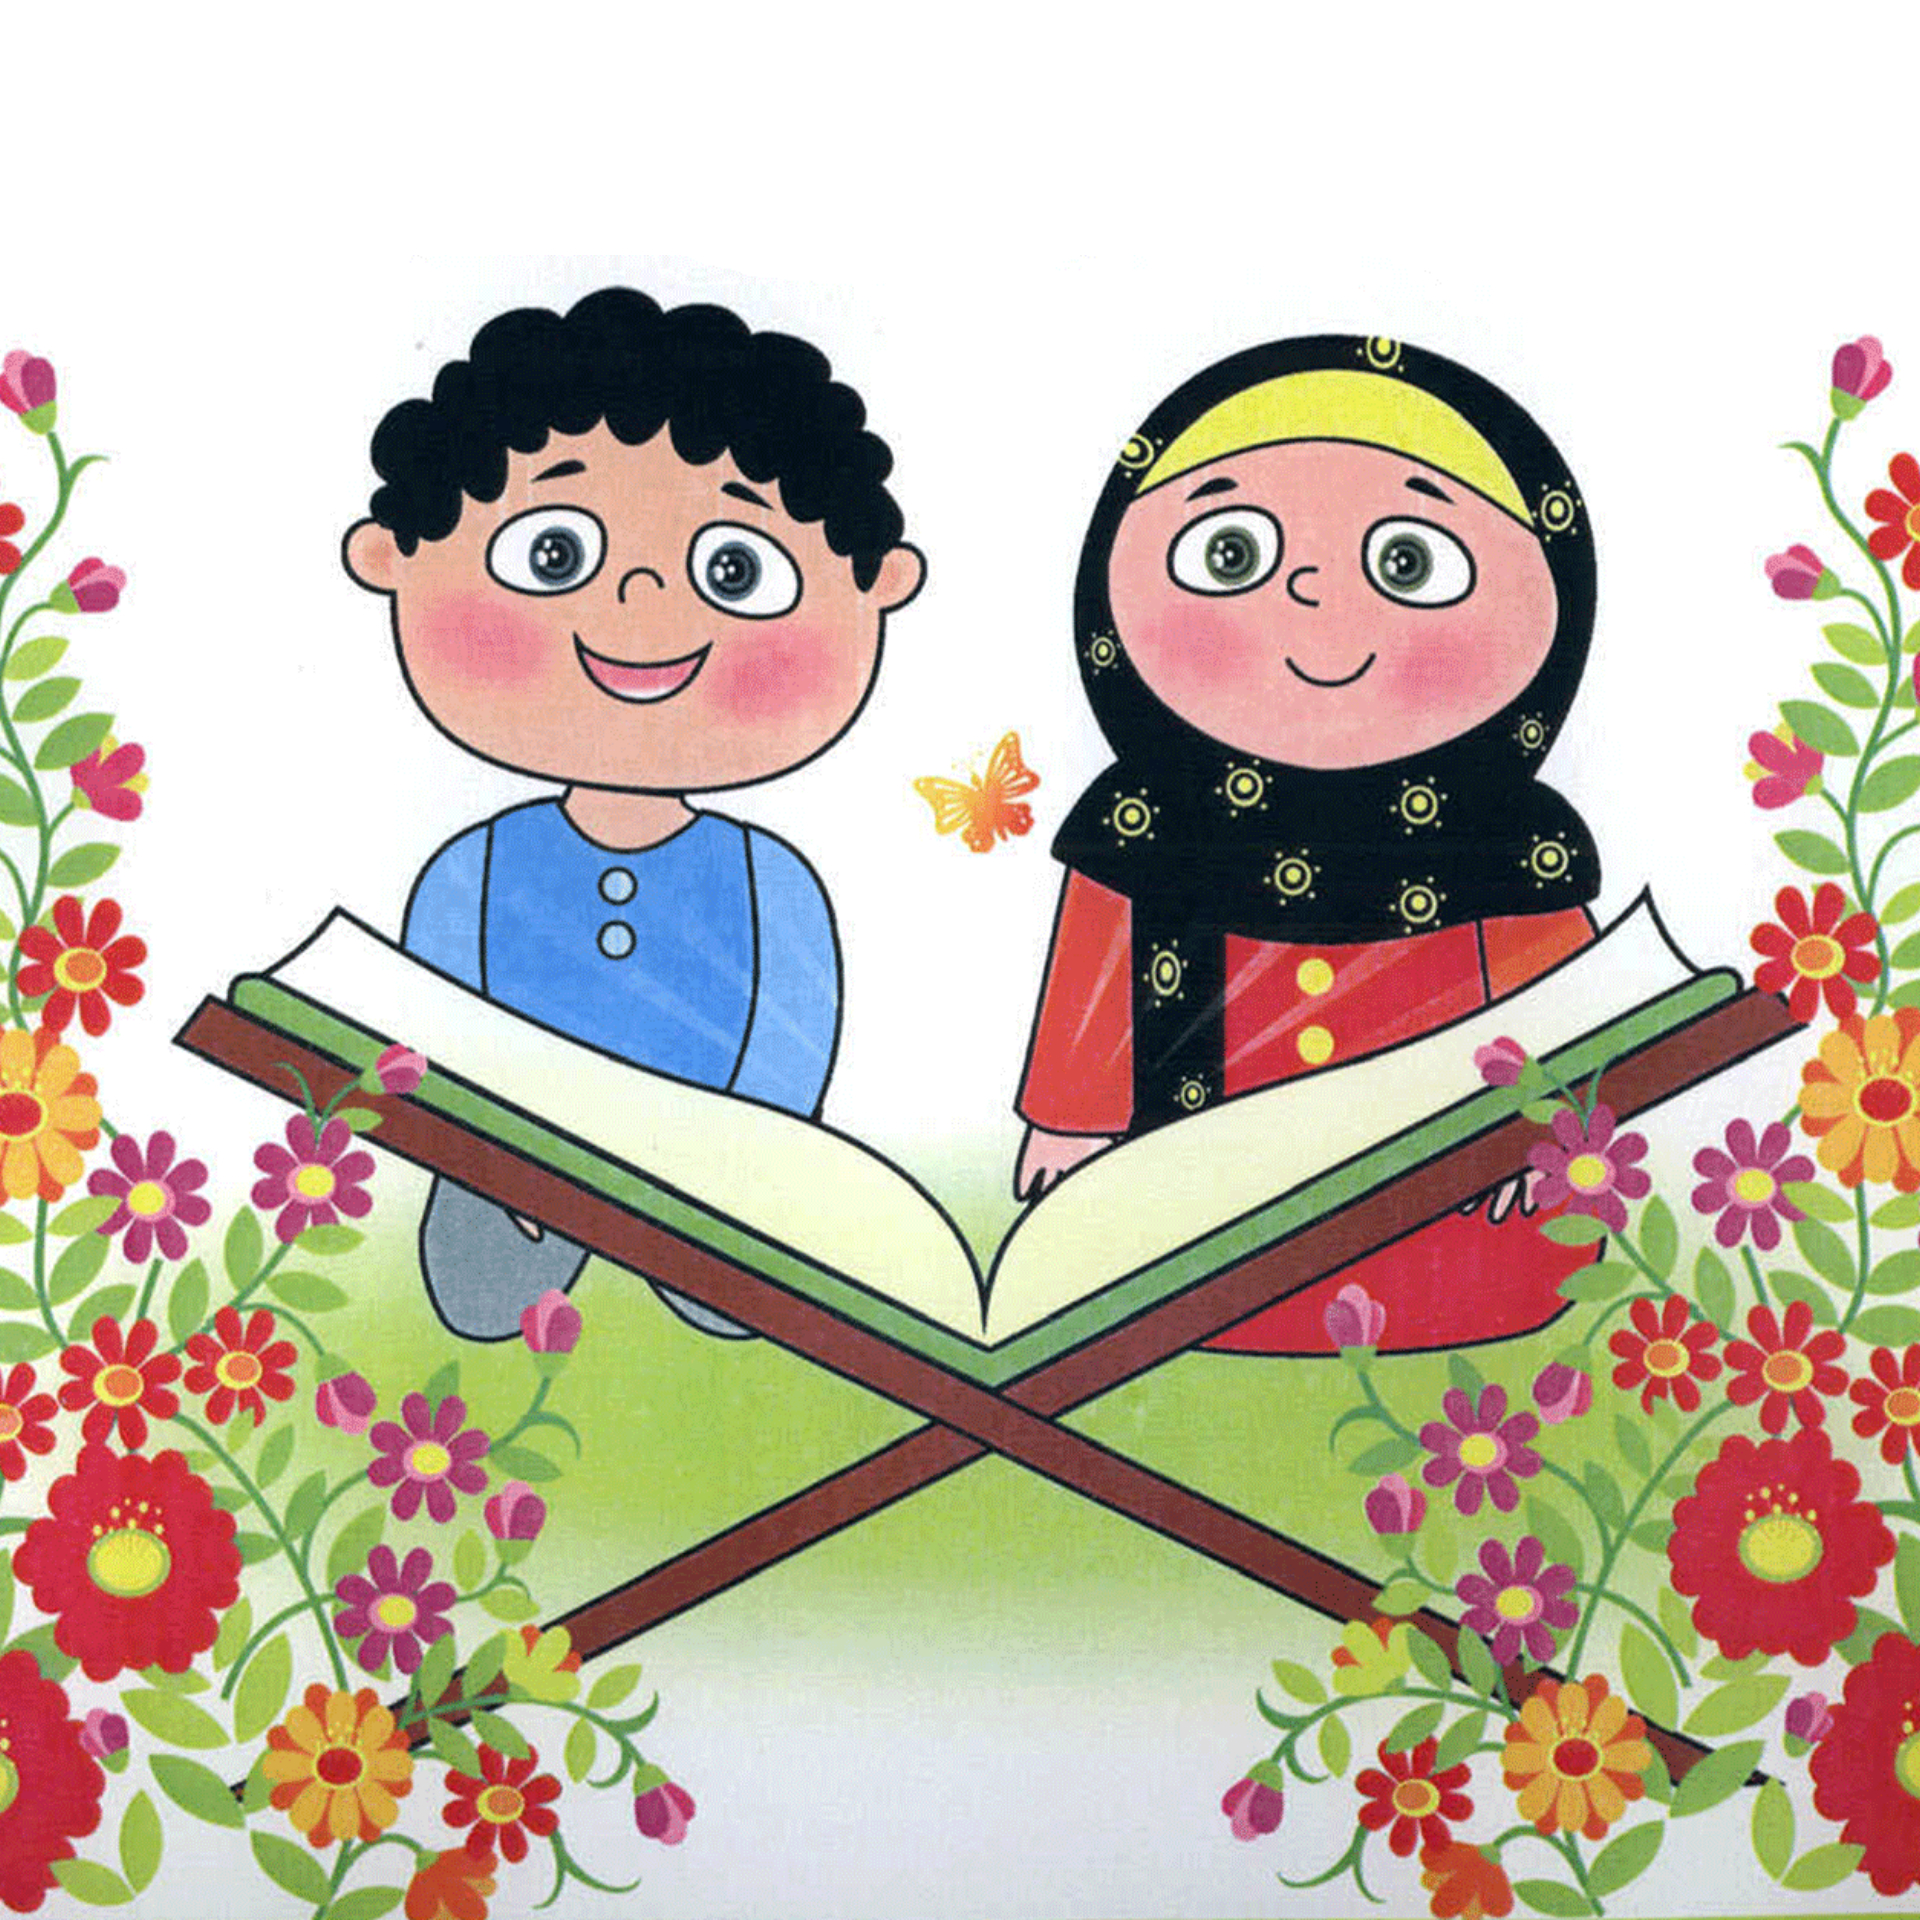 آموزش قرآن به کودکان در خانه گل نرگس تهران